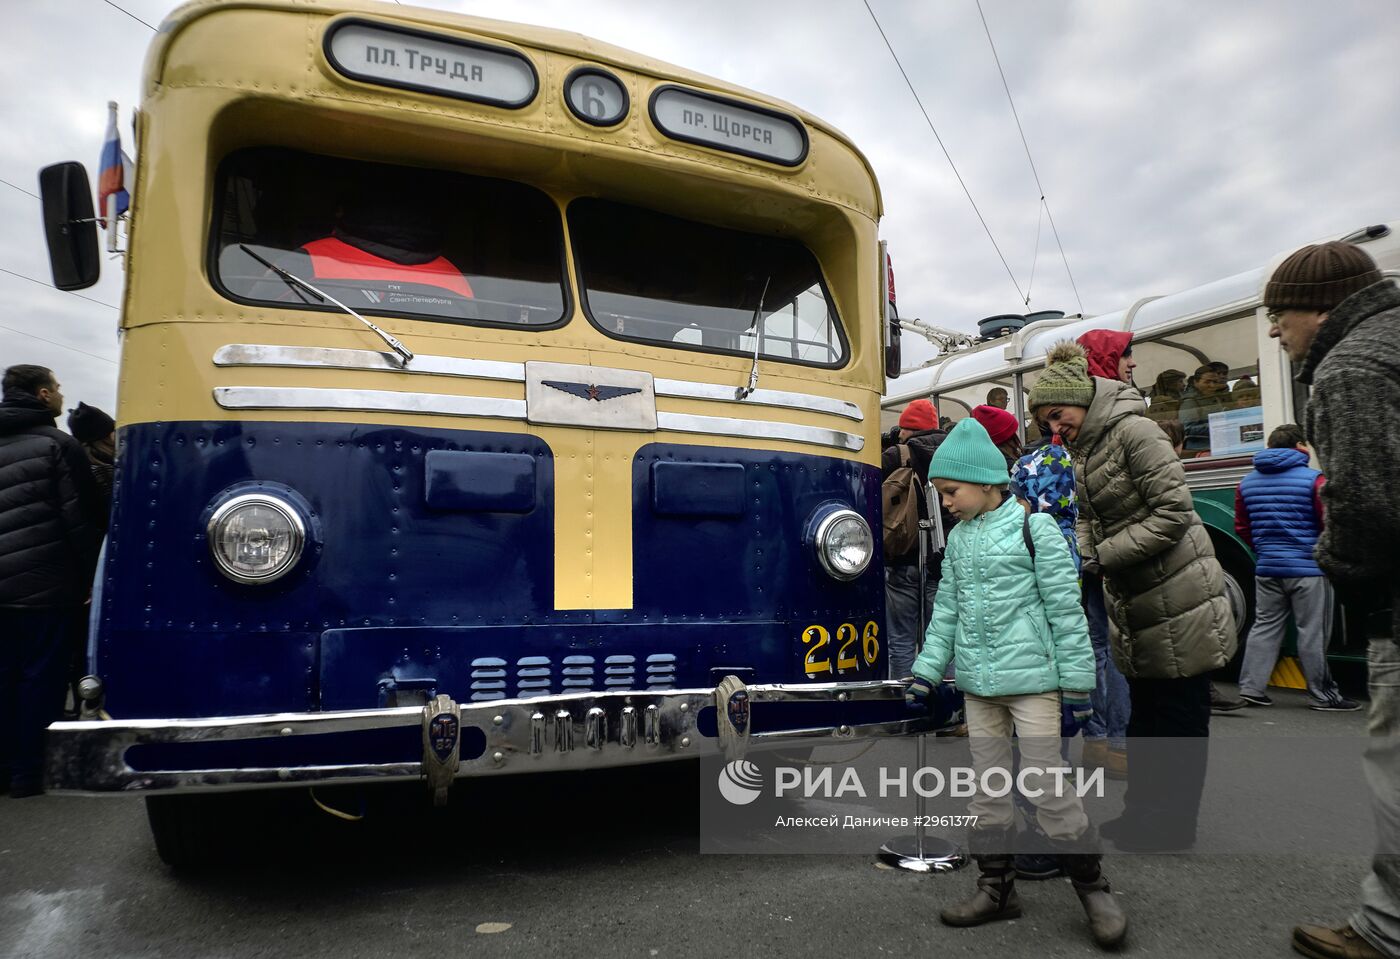 Празднование 80-летия петербургского троллейбуса на Дворцовой площади в Санкт-Петербурге